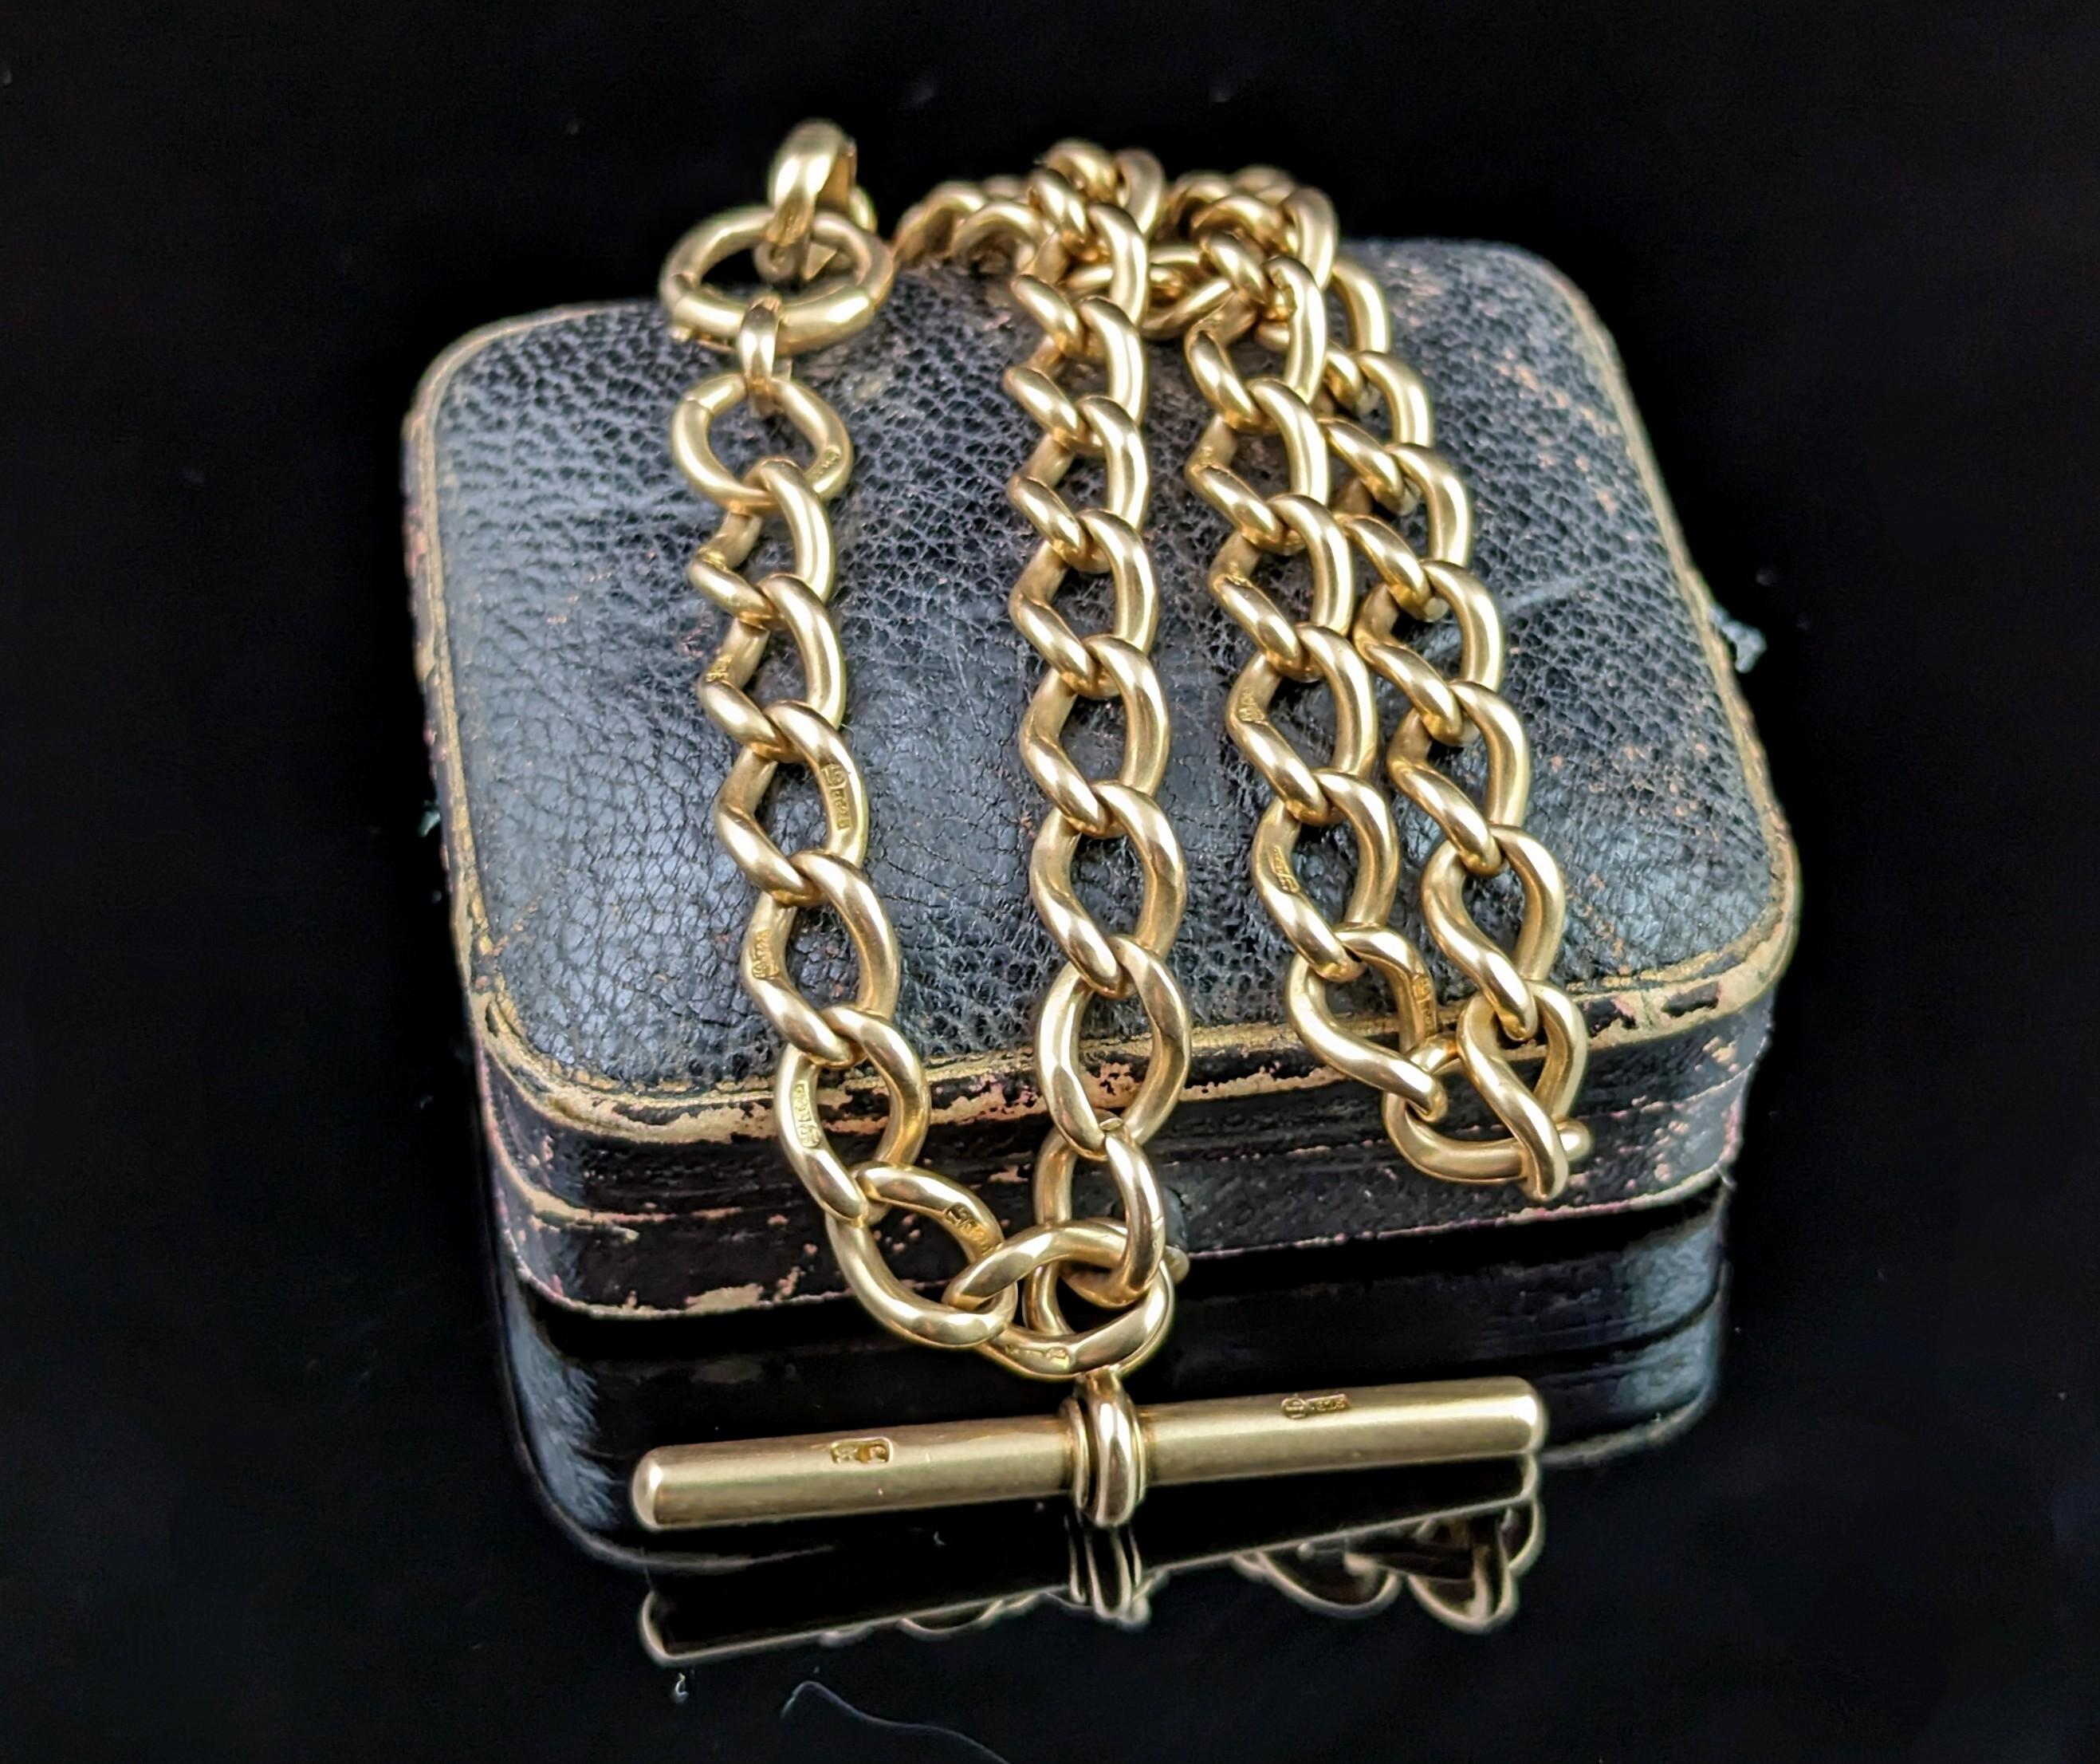 Antique 15k gold Albert chain, Watch chain, heavy  6